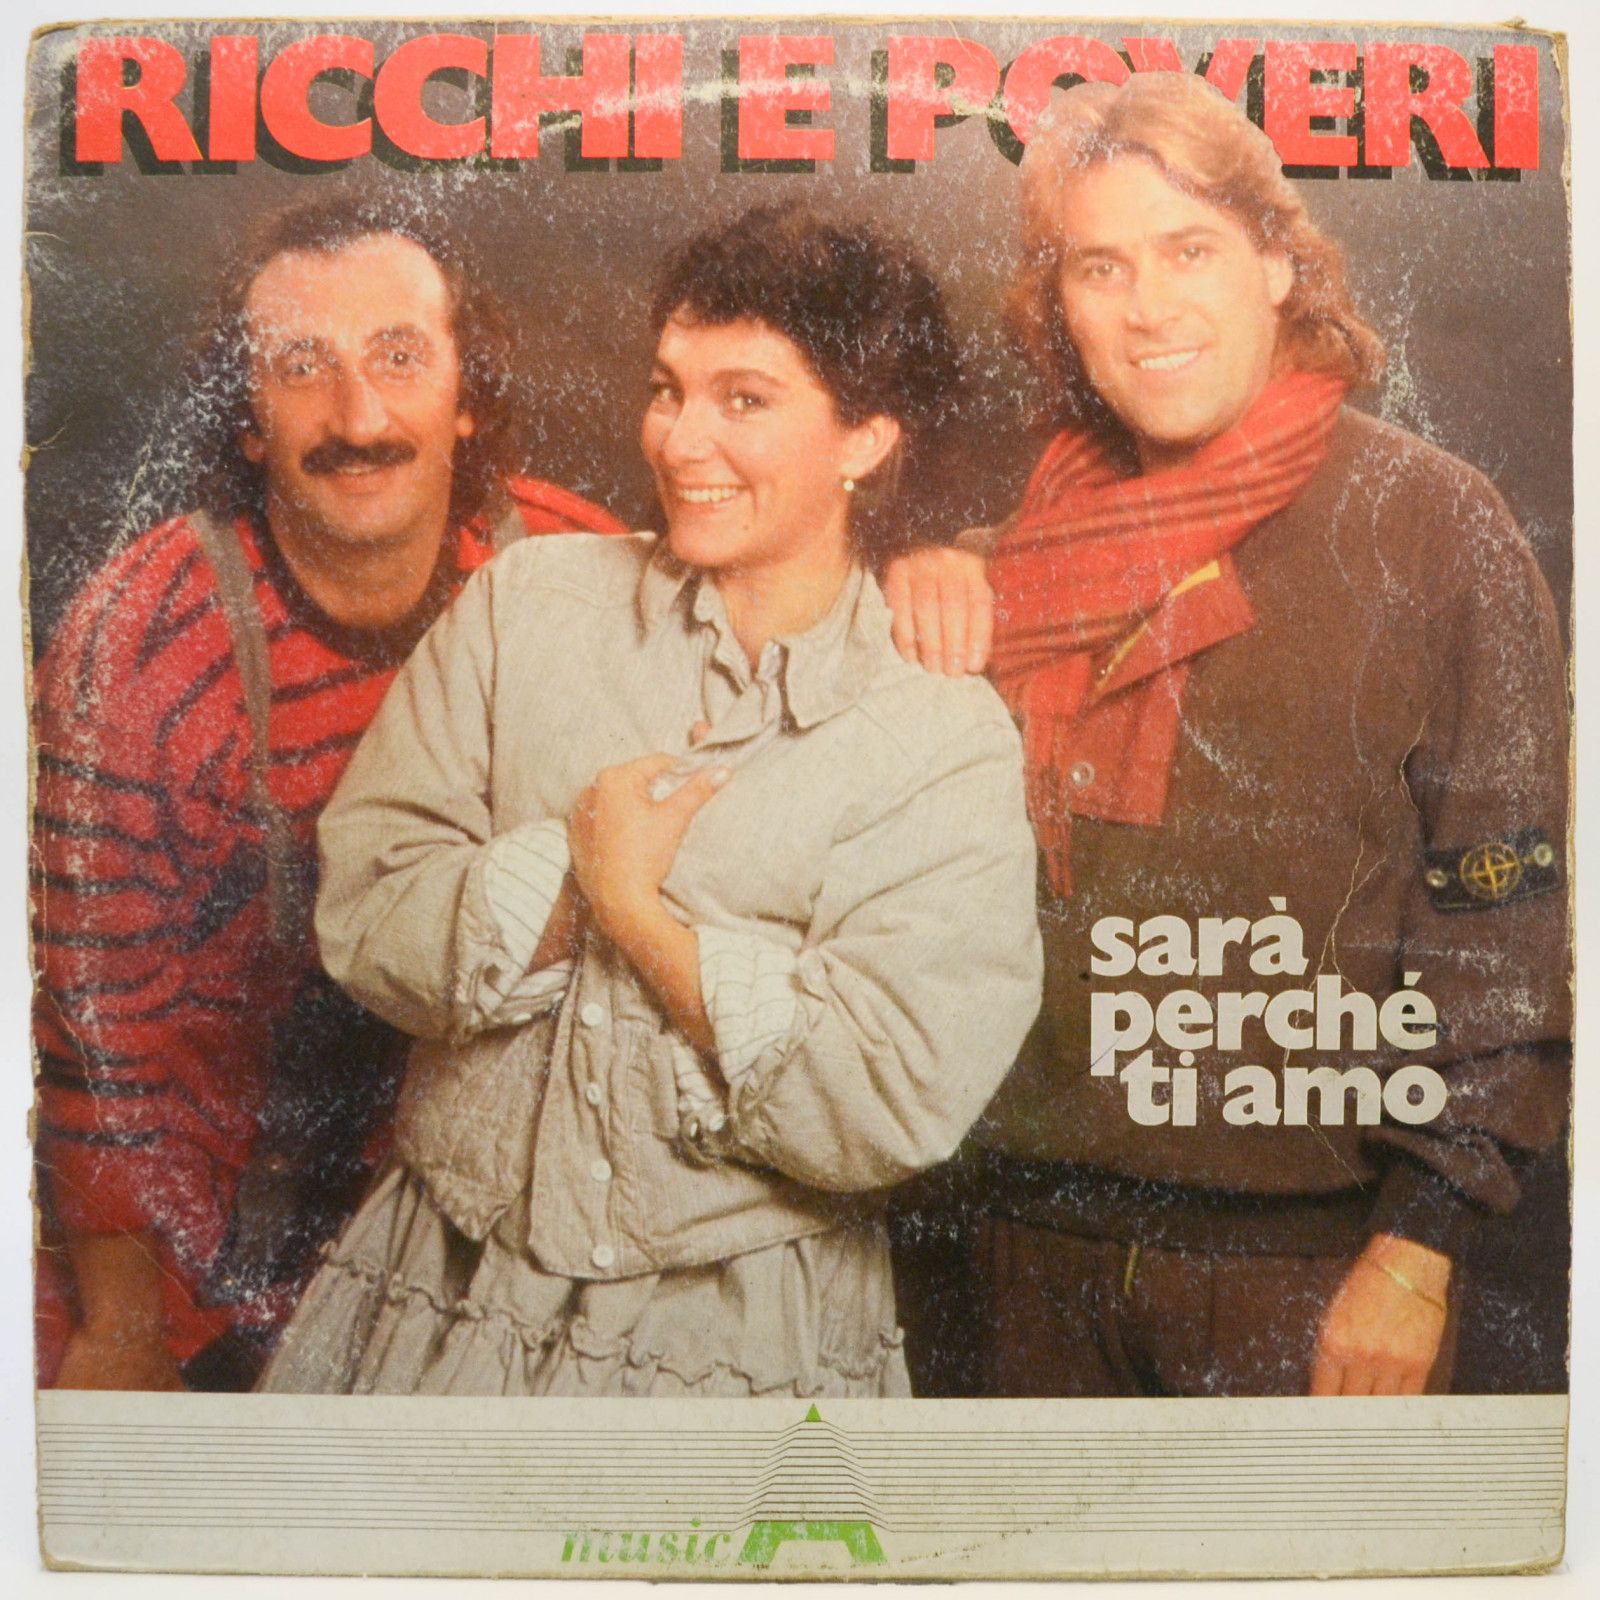 Ricchi E Poveri — Sarà Perché Ti Amo (Italy), 1983